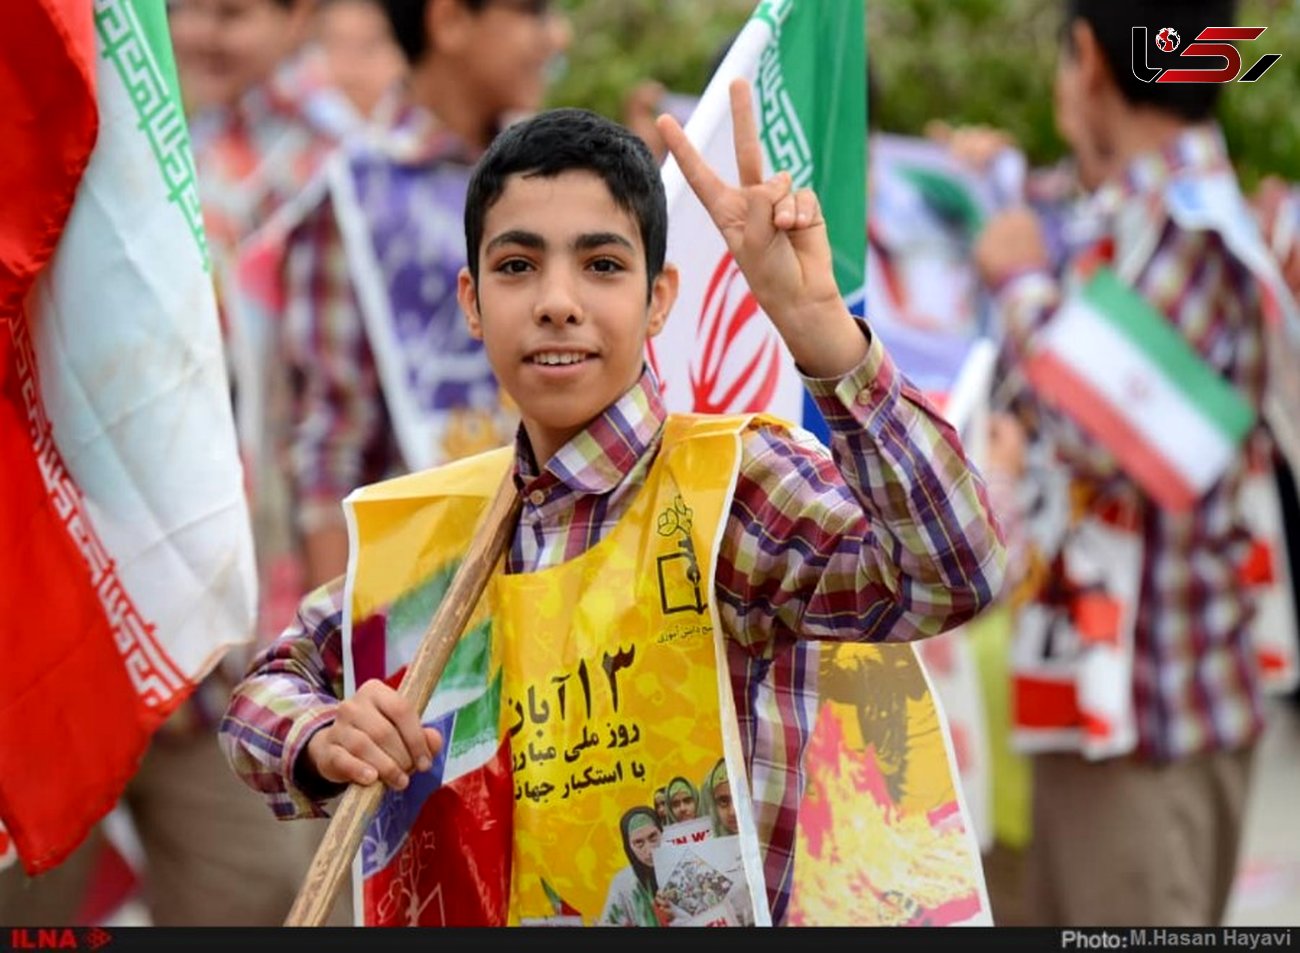 مردم ایران کمر آمریکا را شکستند